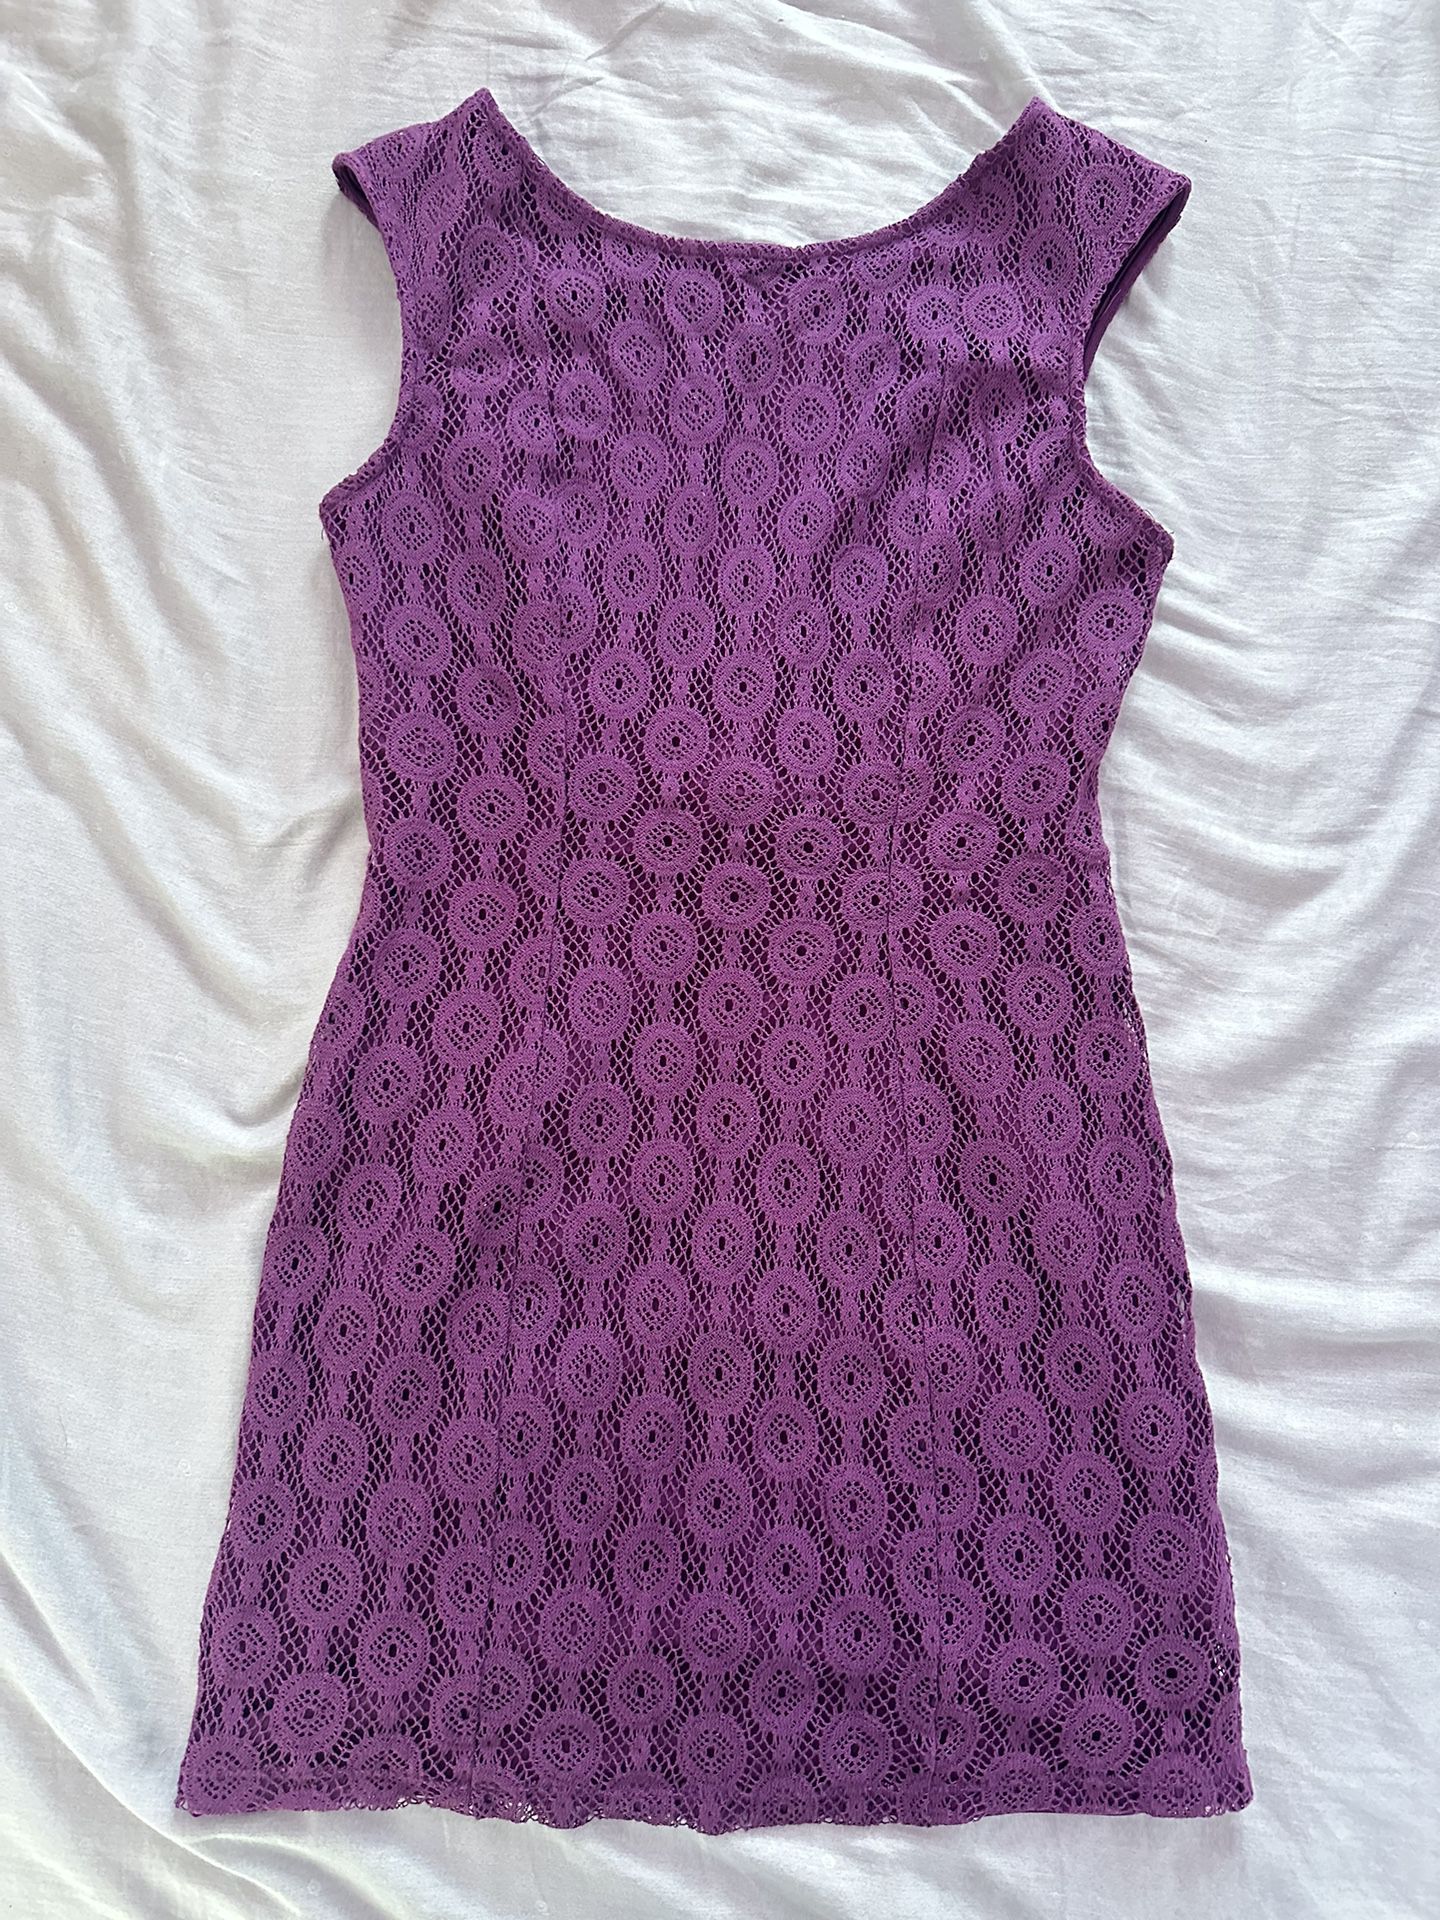 Purple Scoop Back Crochet Mini Dress Size M